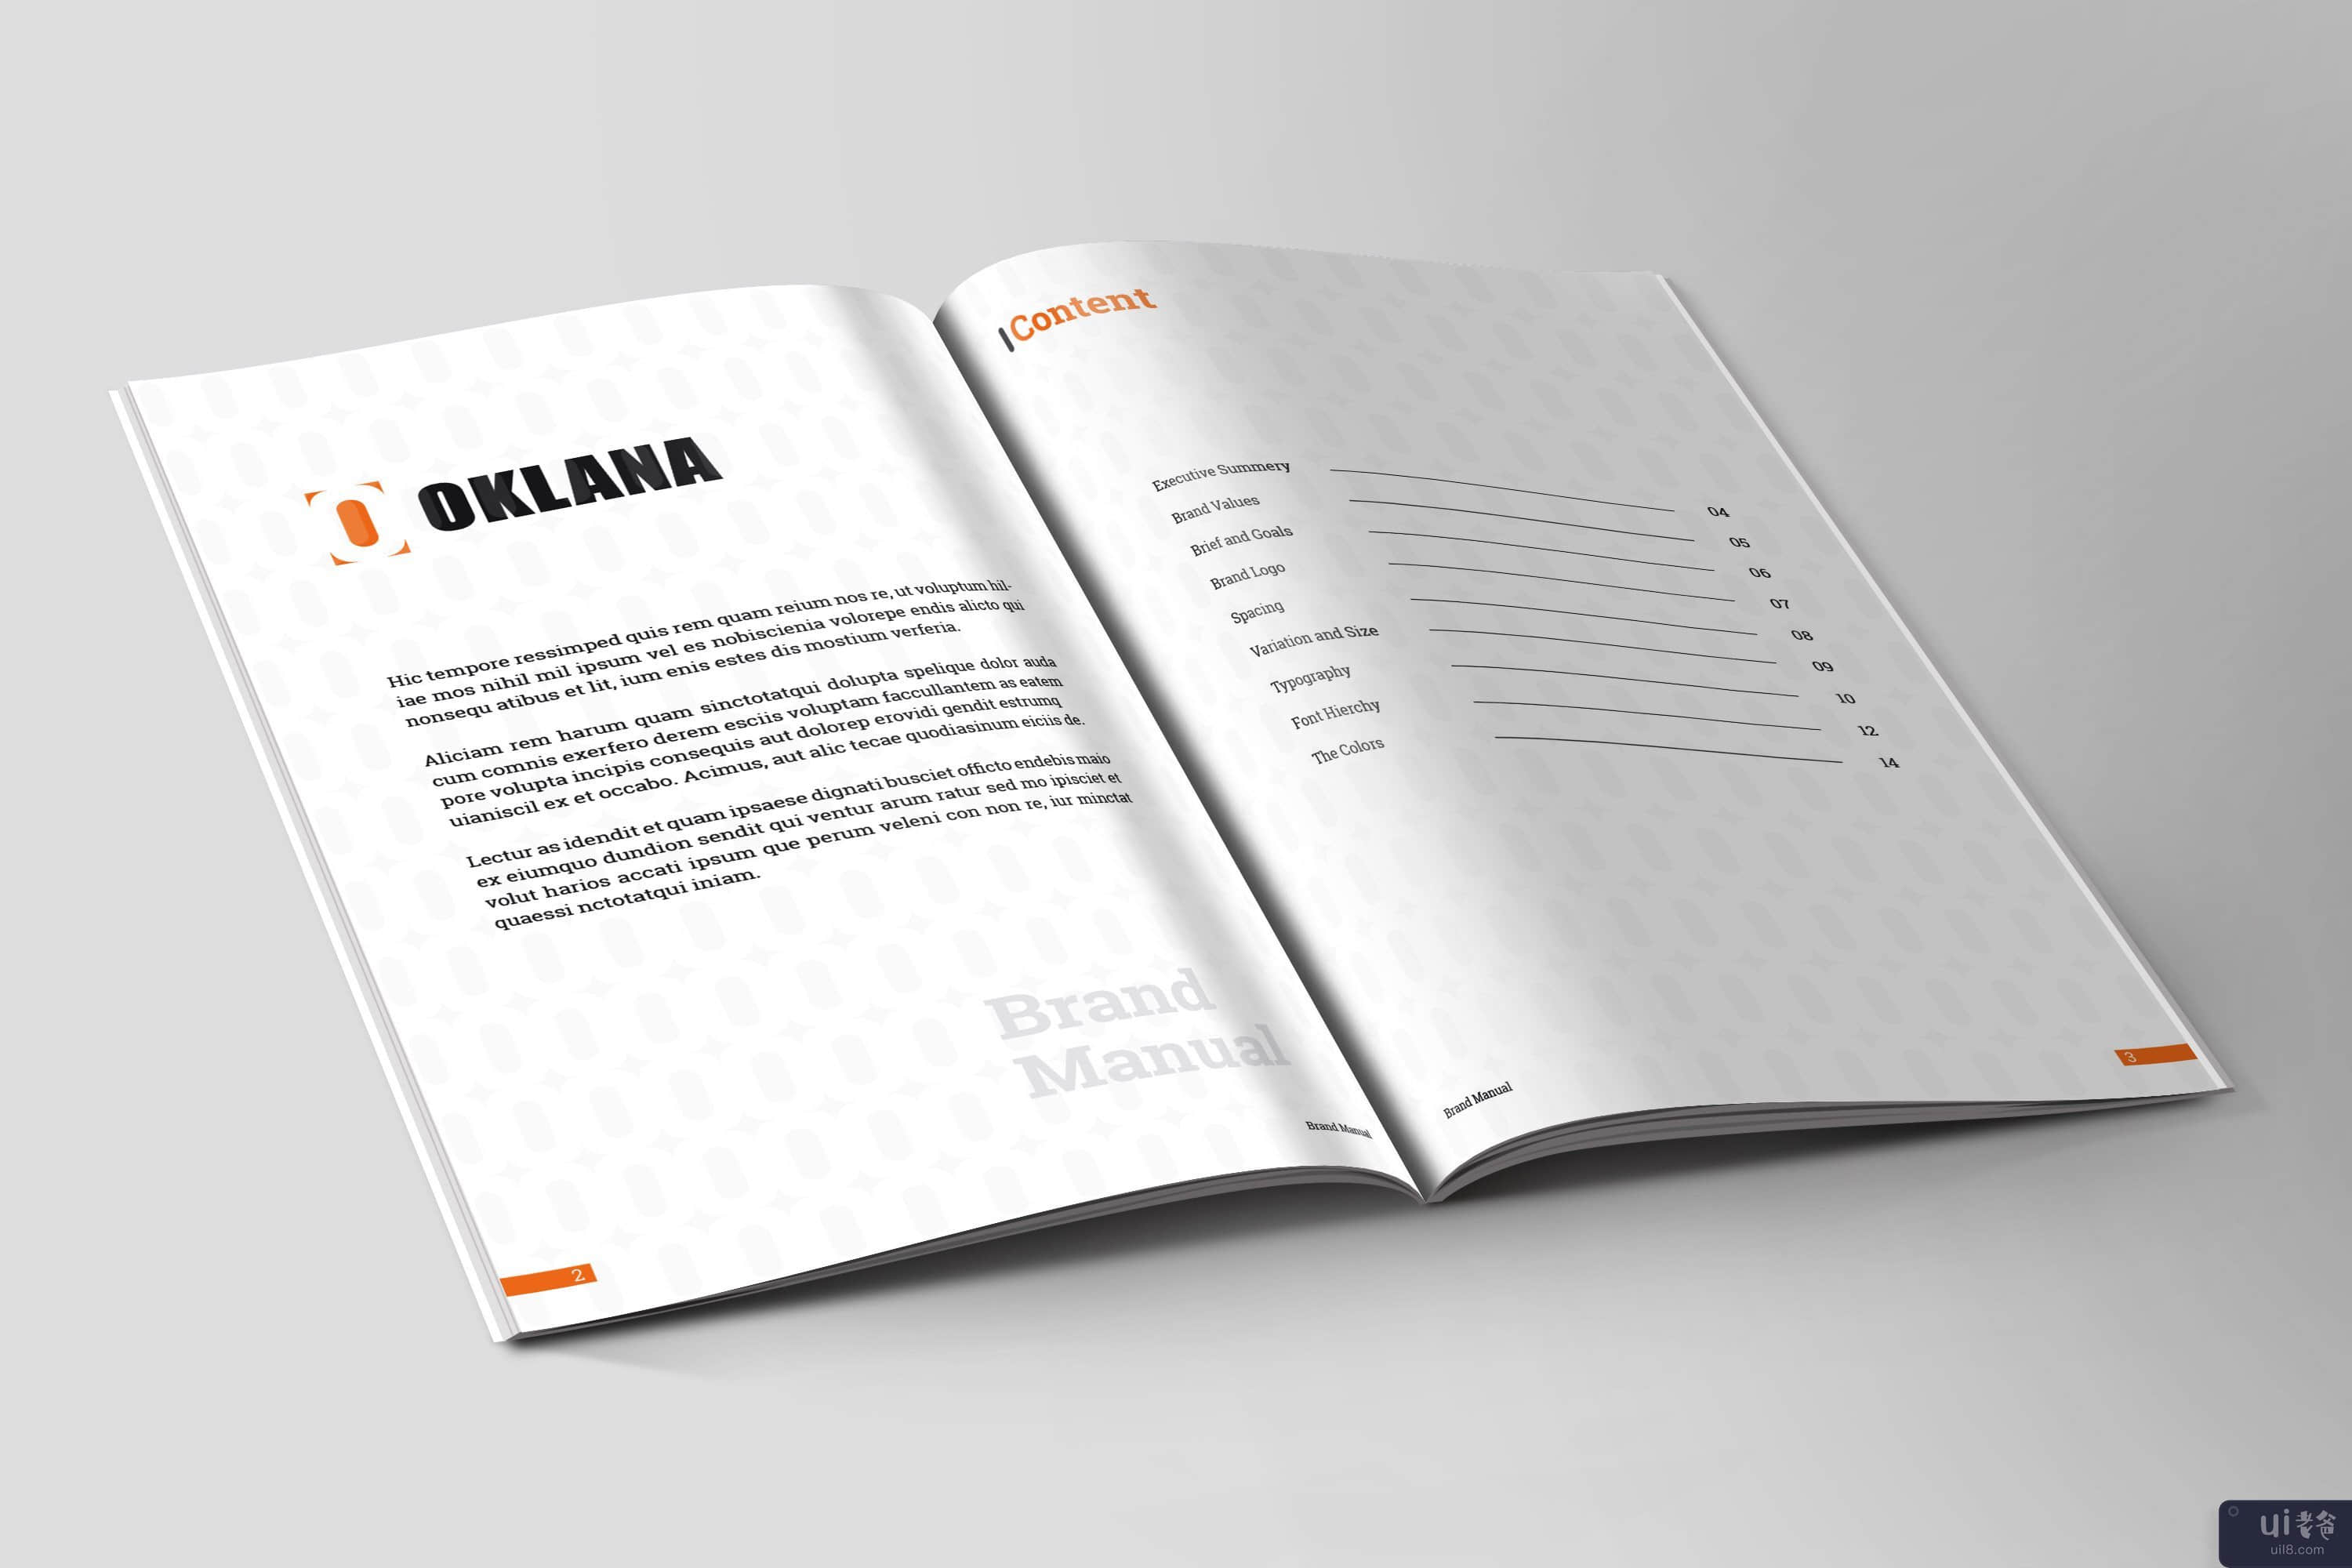 品牌手册指南 | InDesign 模板(Brand Manual Guideline | InDesign Template)插图2